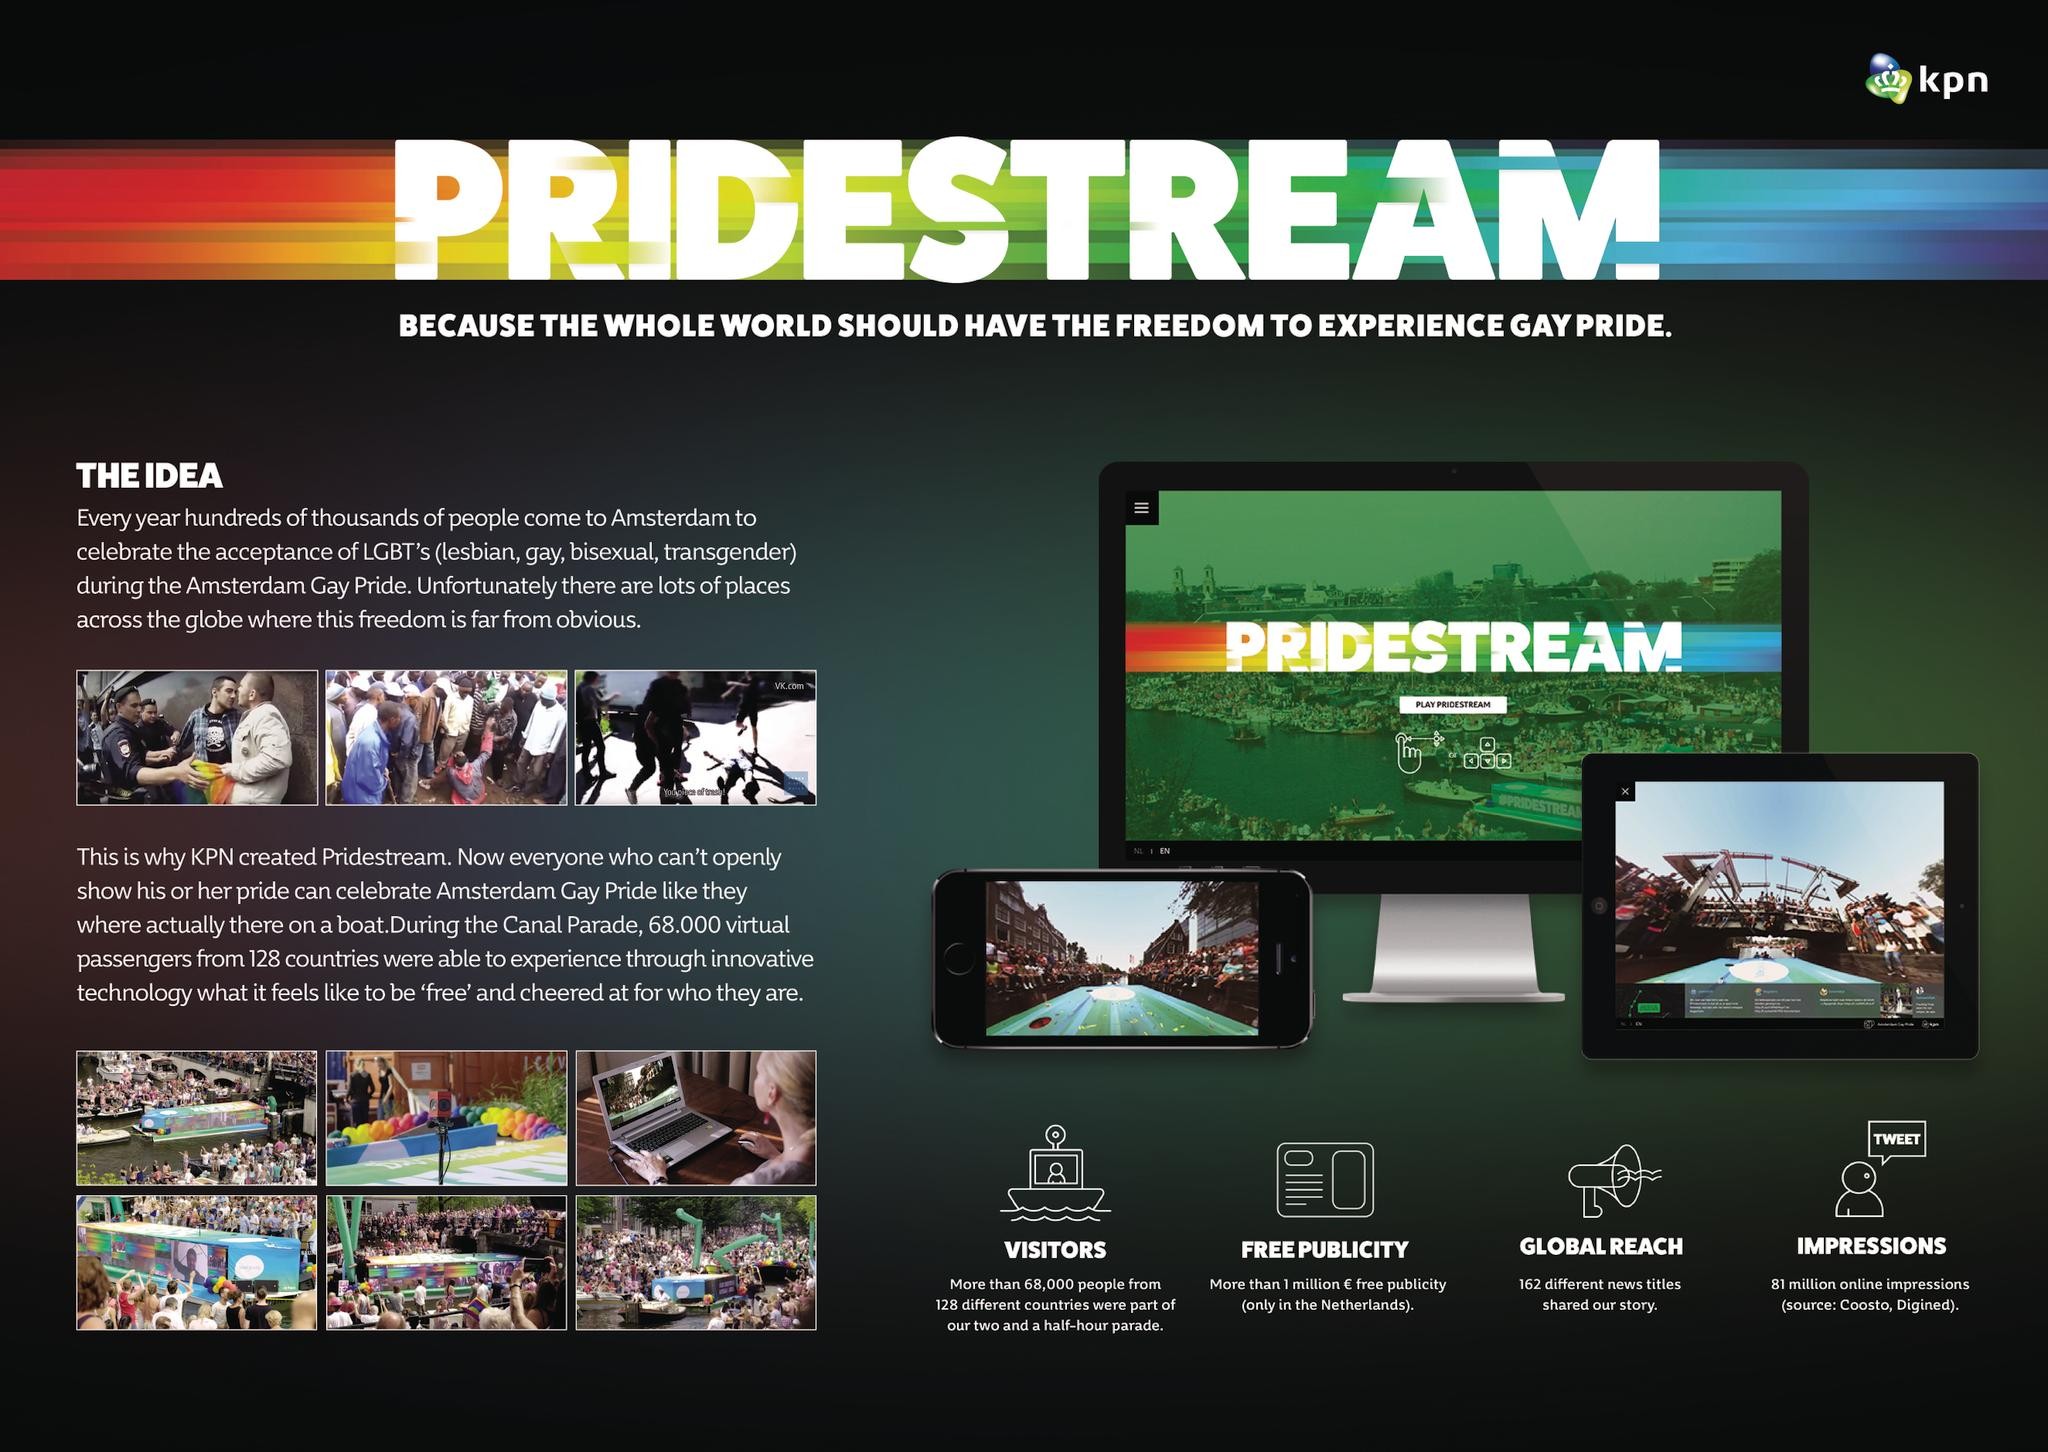 Pridestream